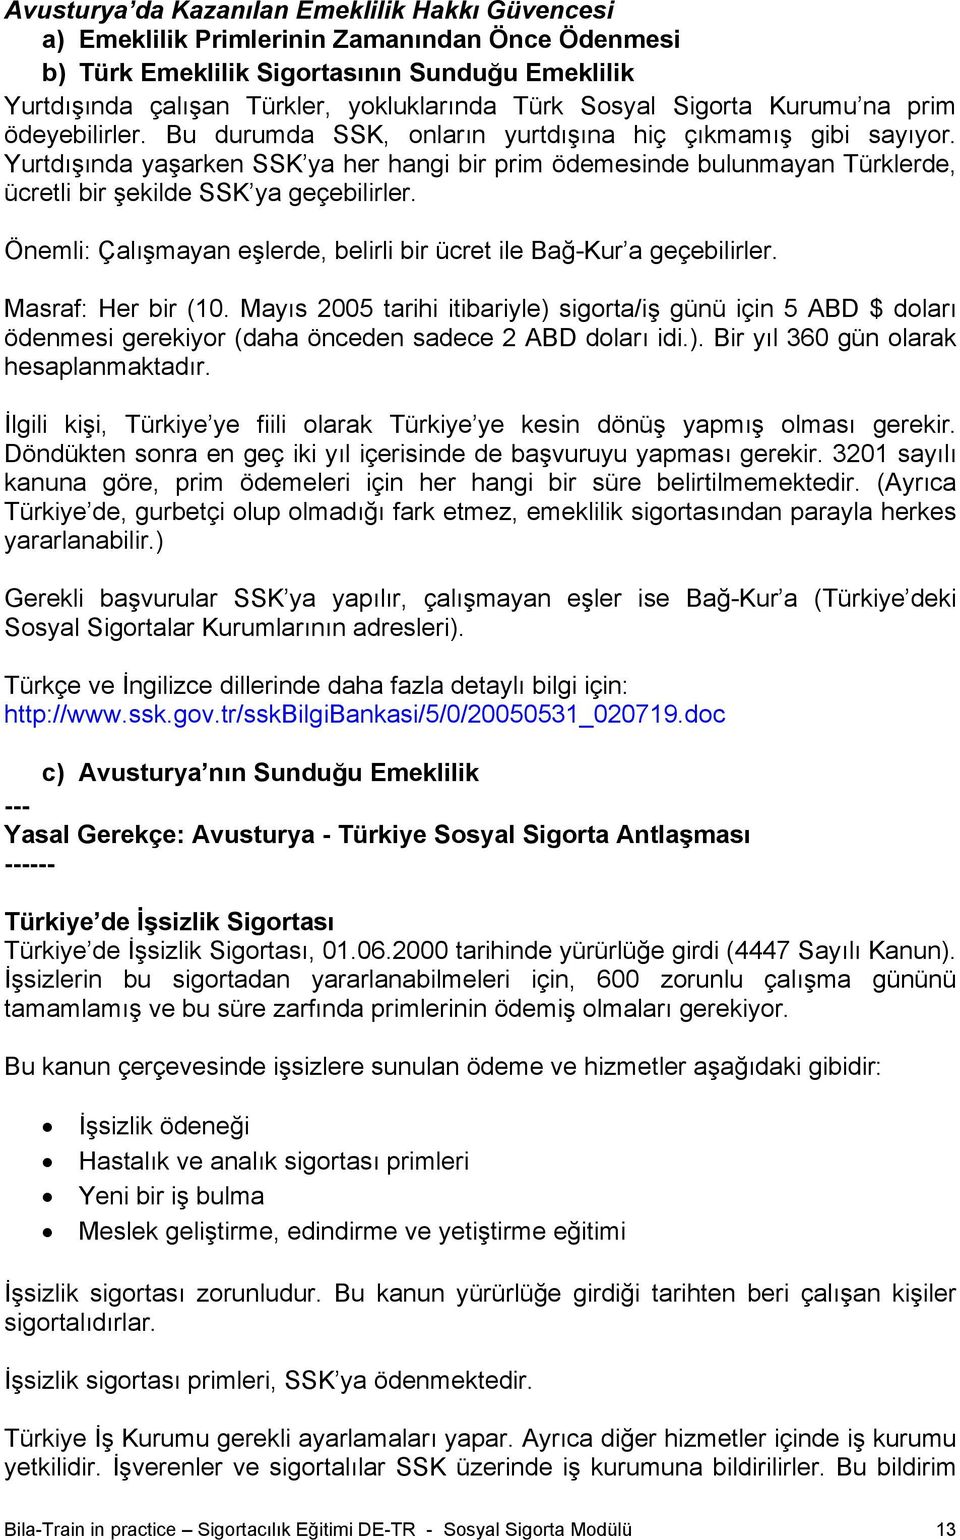 Yurtdışında yaşarken SSK ya her hangi bir prim ödemesinde bulunmayan Türklerde, ücretli bir şekilde SSK ya geçebilirler. Önemli: Çalışmayan eşlerde, belirli bir ücret ile Bağ-Kur a geçebilirler.